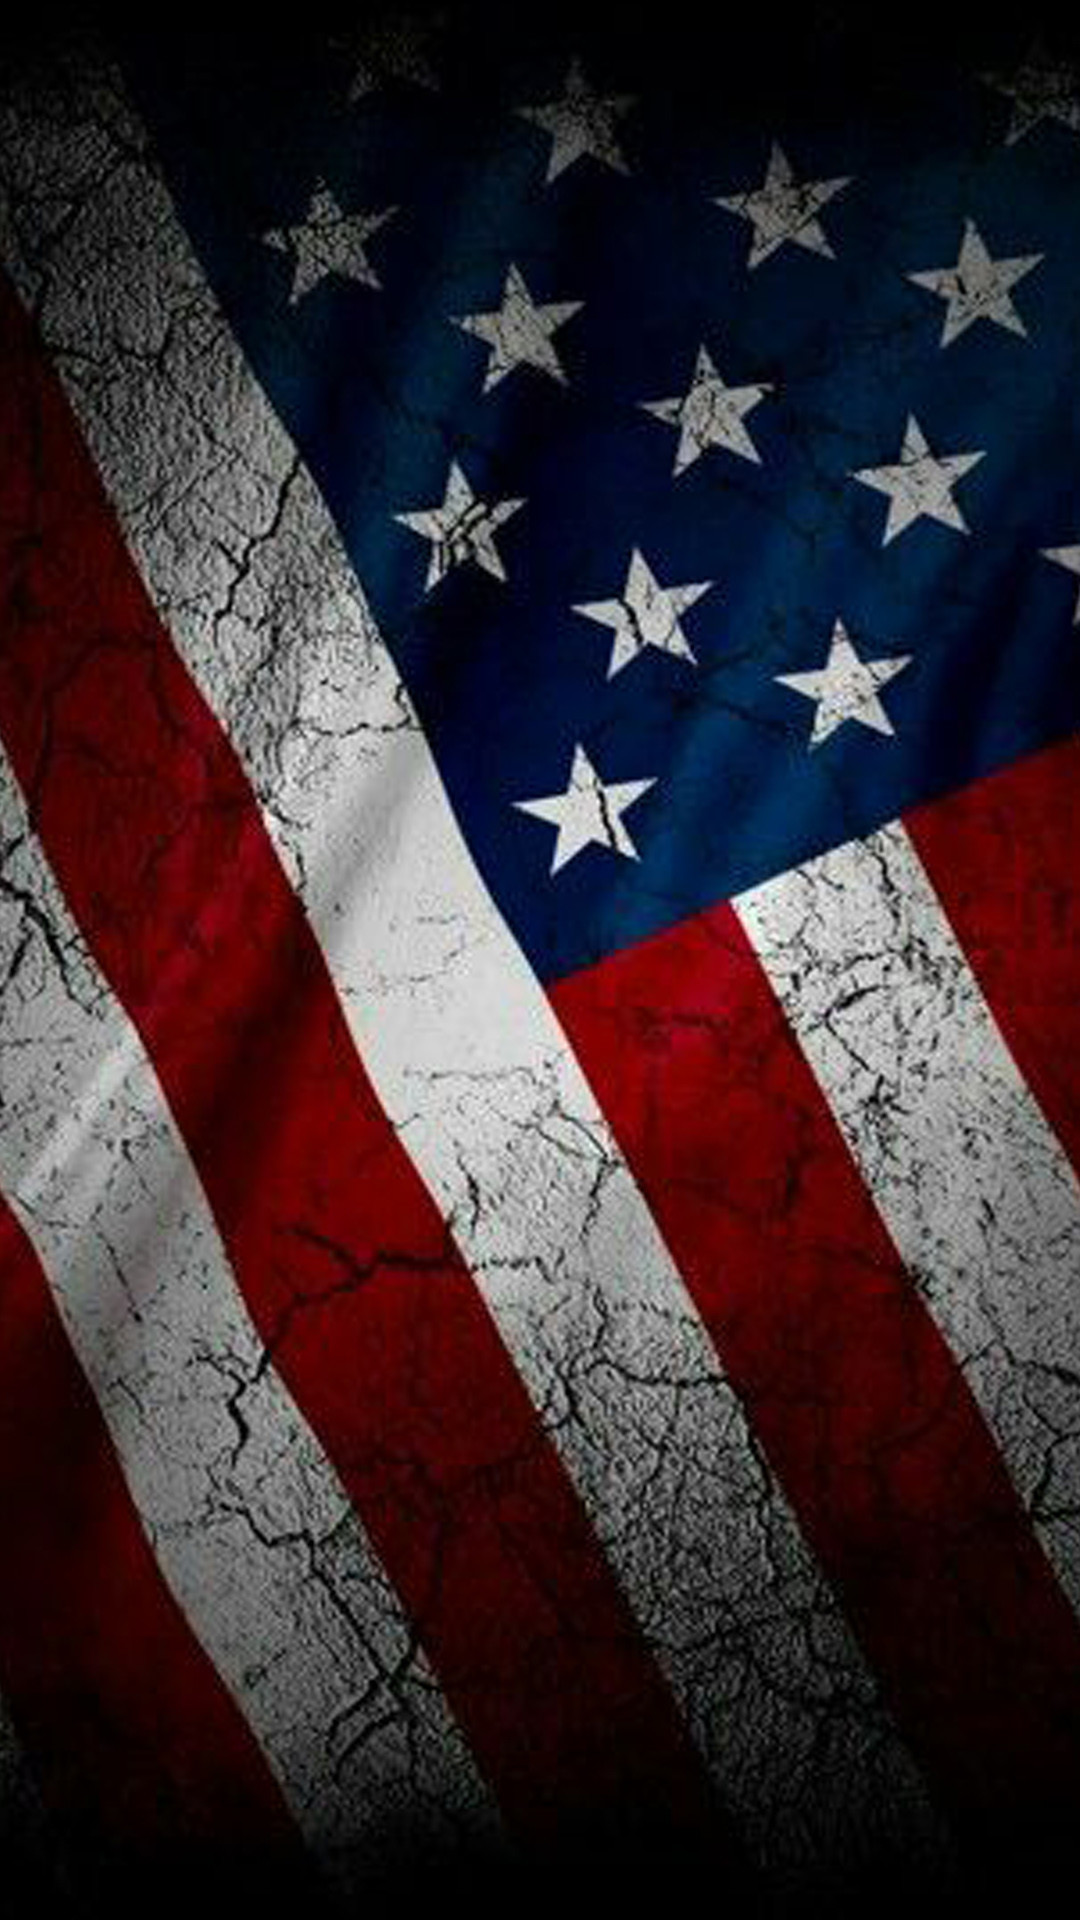 amerikanische tapeten hd,flagge,flagge der vereinigten staaten,flaggentag usa,veteranen tag,textil 